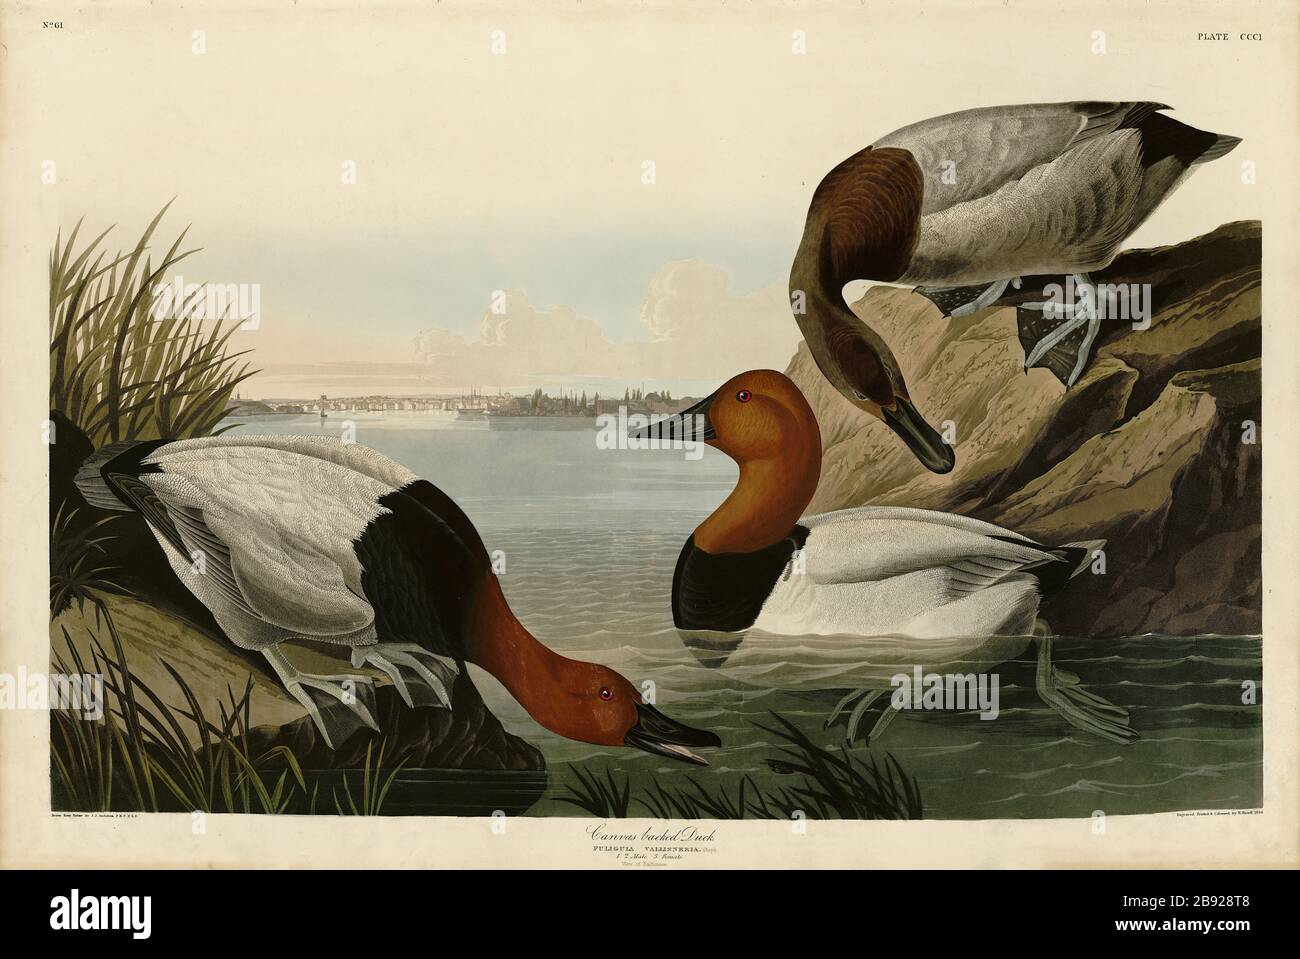 Plato 301 Pato con reverso de lienzo (Canvasback) el folio Birds of America (1827–1839) de John James Audubon - imagen editada de alta resolución y calidad Foto de stock